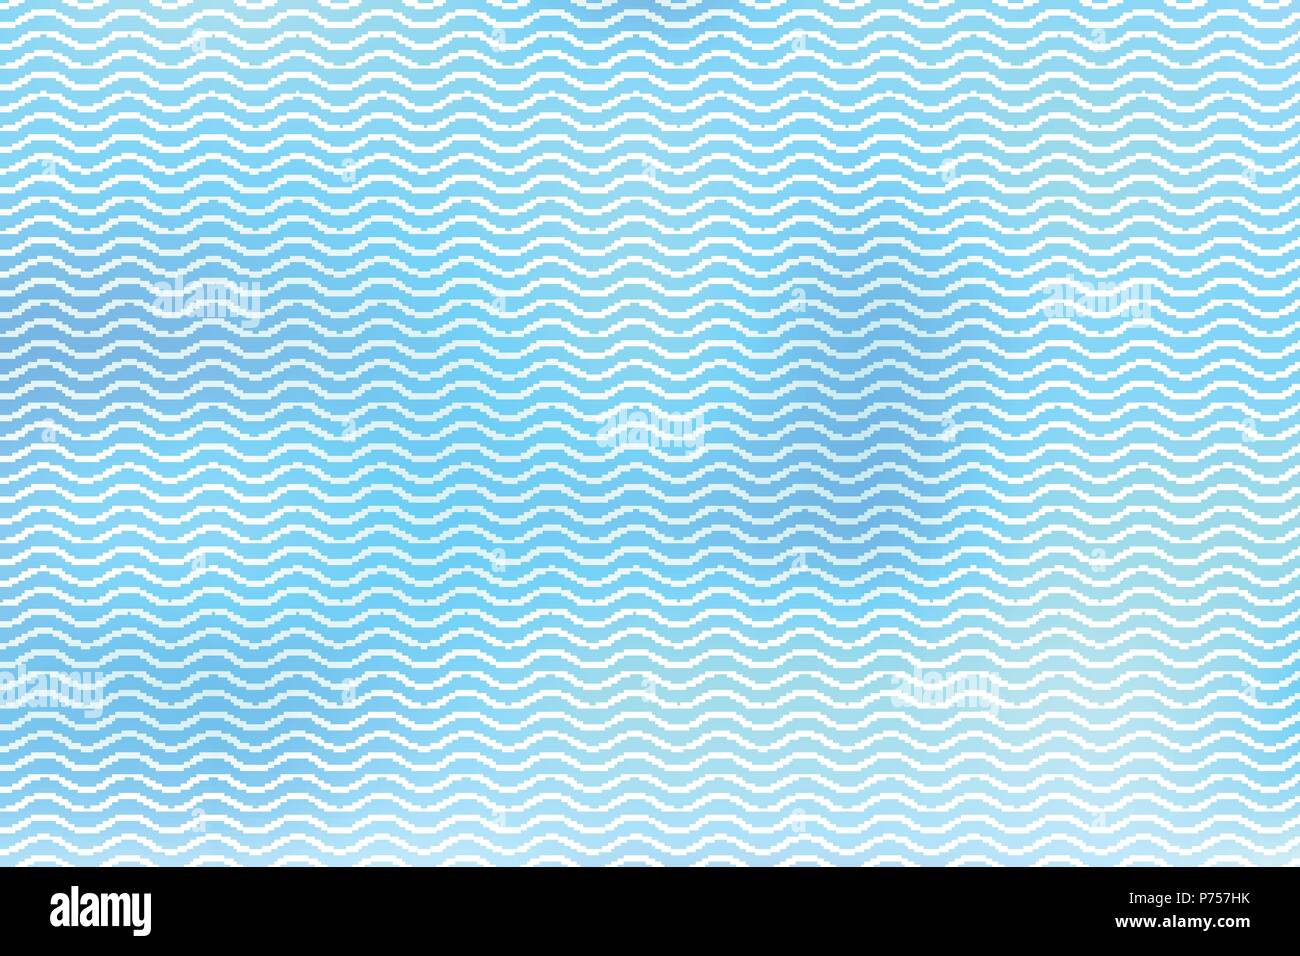 Résumé de l'onde des lignes blanches sur fond bleu, rayures ondulées, surface rugueuse, Vector Illustration Illustration de Vecteur